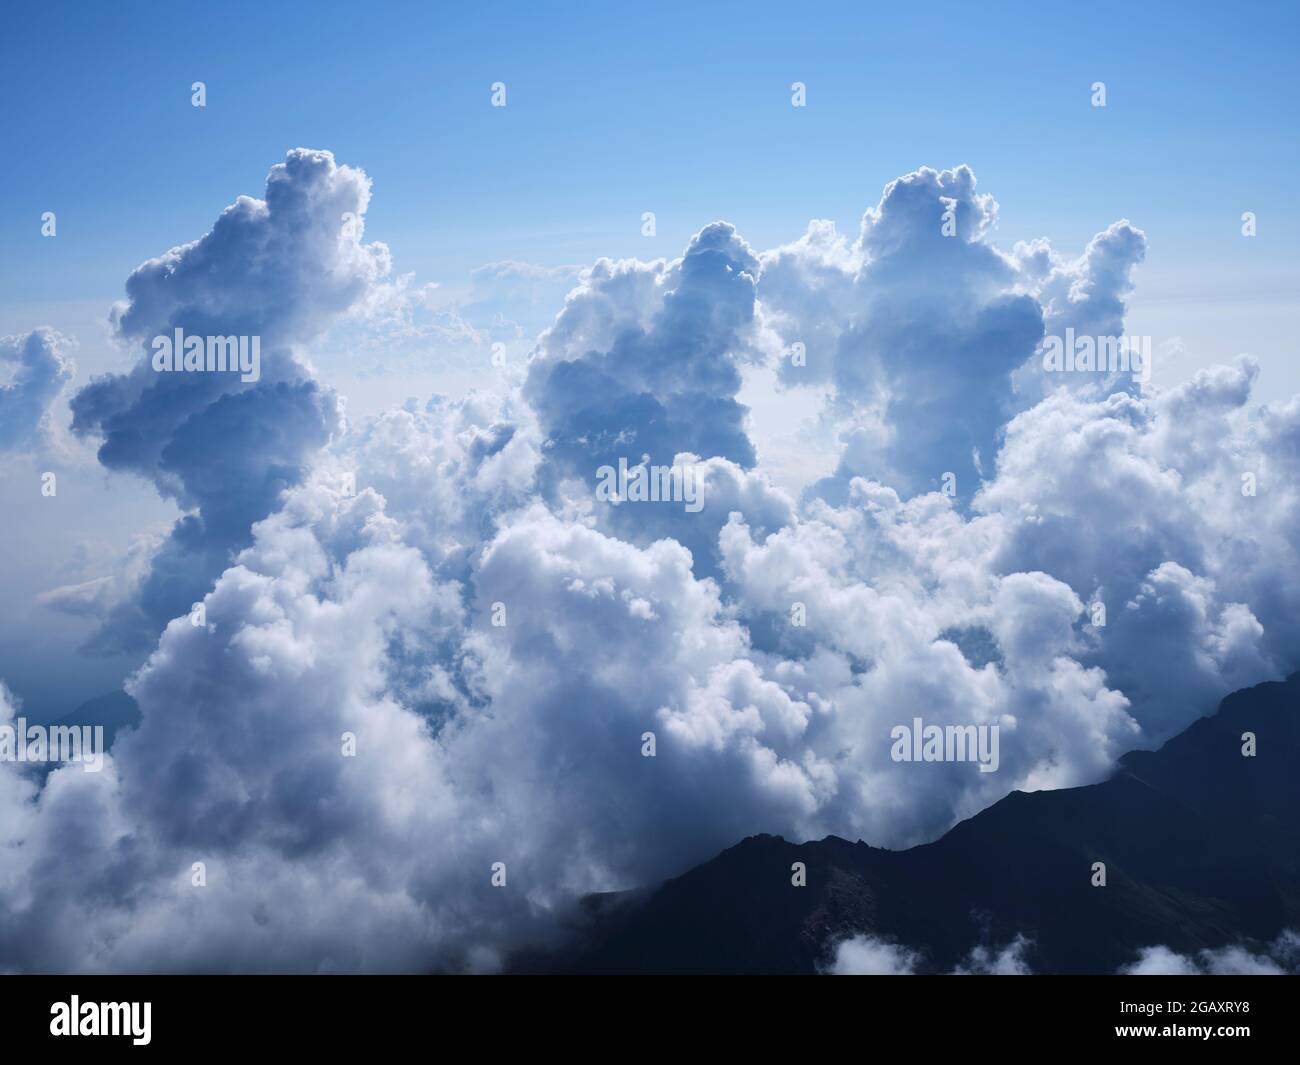 LUFTAUFNAHME. Aufragende Kumuluswolken, die sich etwa 4000 Meter über der Po-Ebene östlich des Monte Viso erheben. Provinz Cuneo, Piemont, Italien. Stockfoto